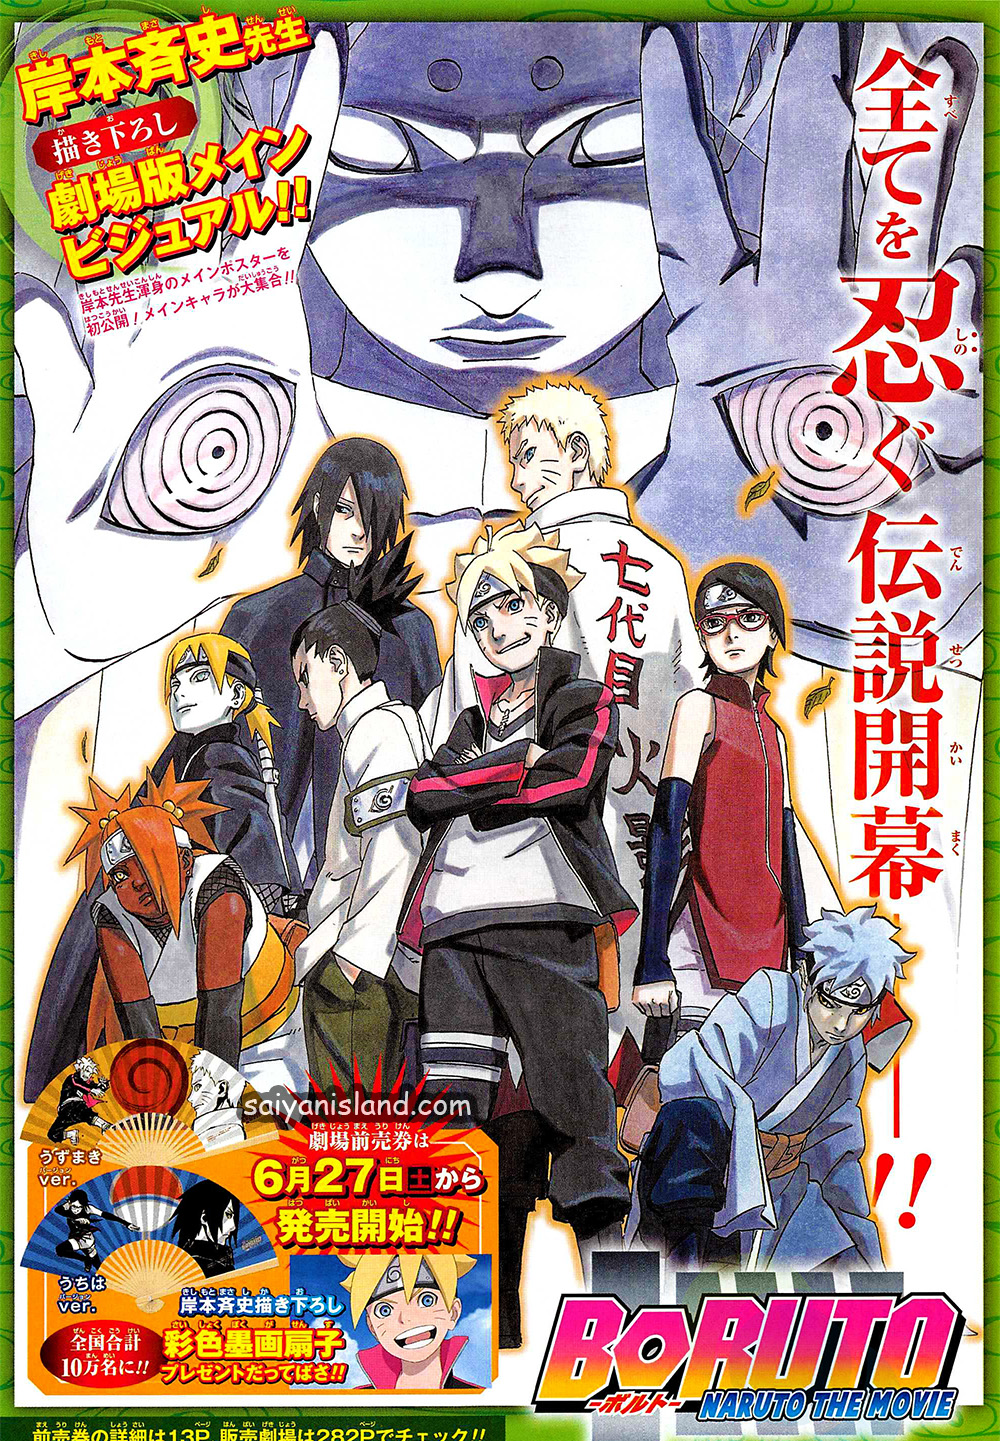 Naruto News: Boruto: Naruto the Movie - Esboços dos Vilões